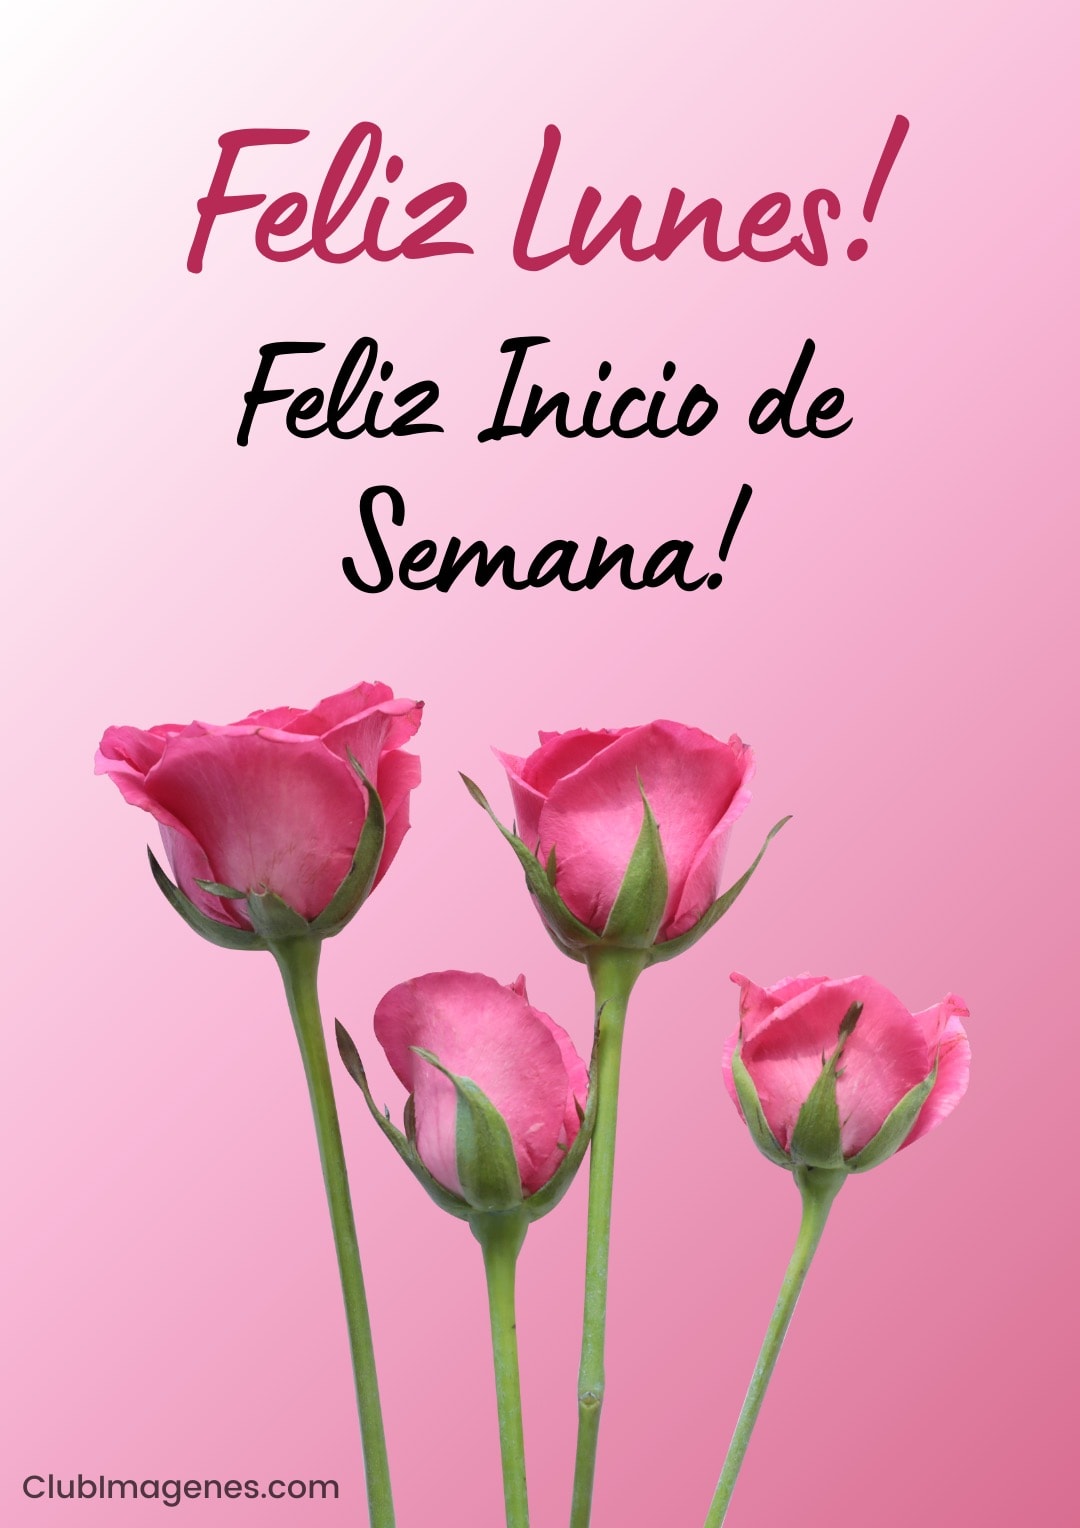 Rosal con mensaje: 'Feliz Lunes! Feliz Inicio de Semana!' en fondo rosa